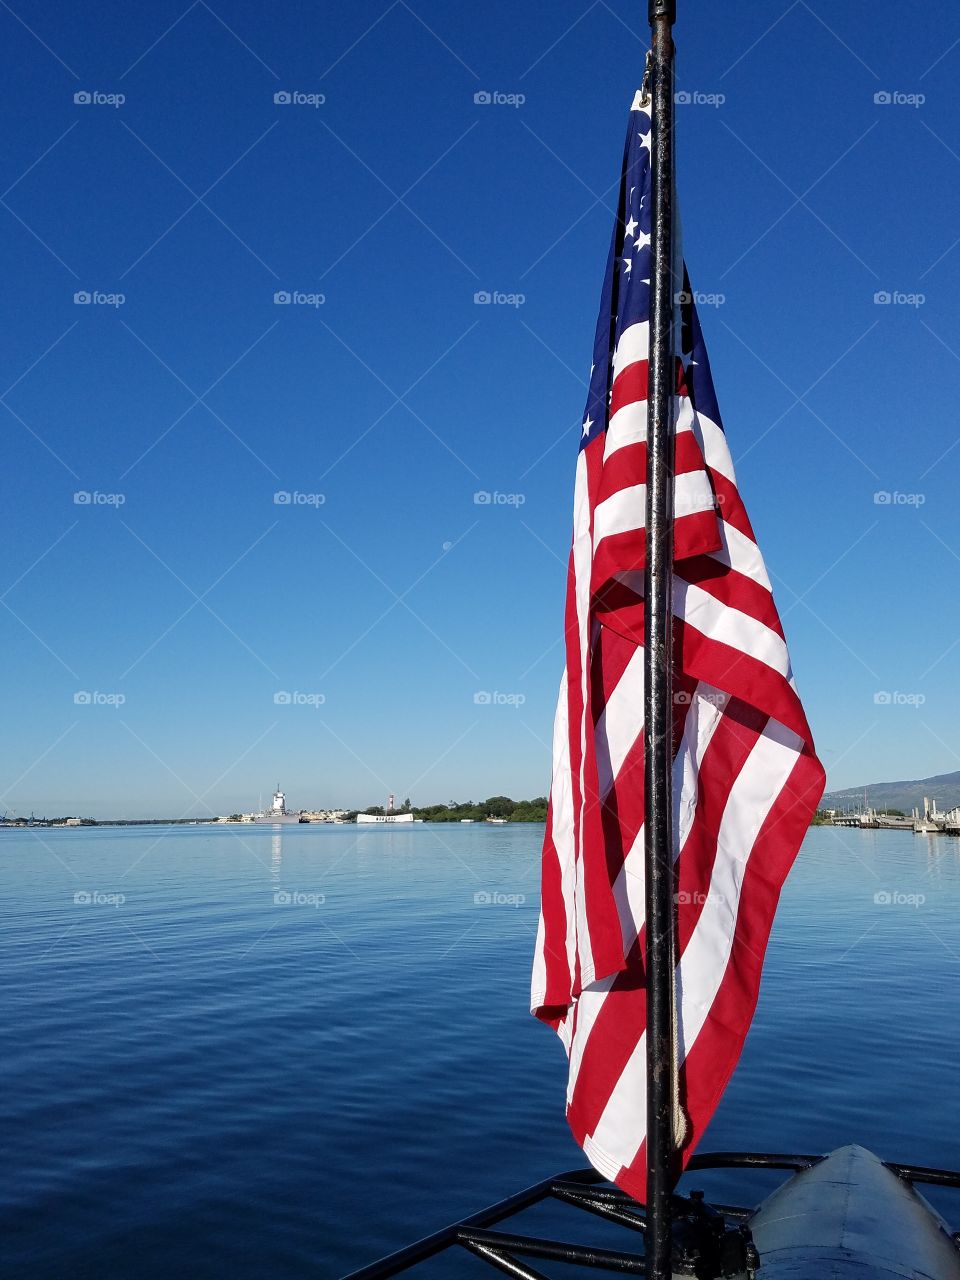 Flag at Pear Harbor